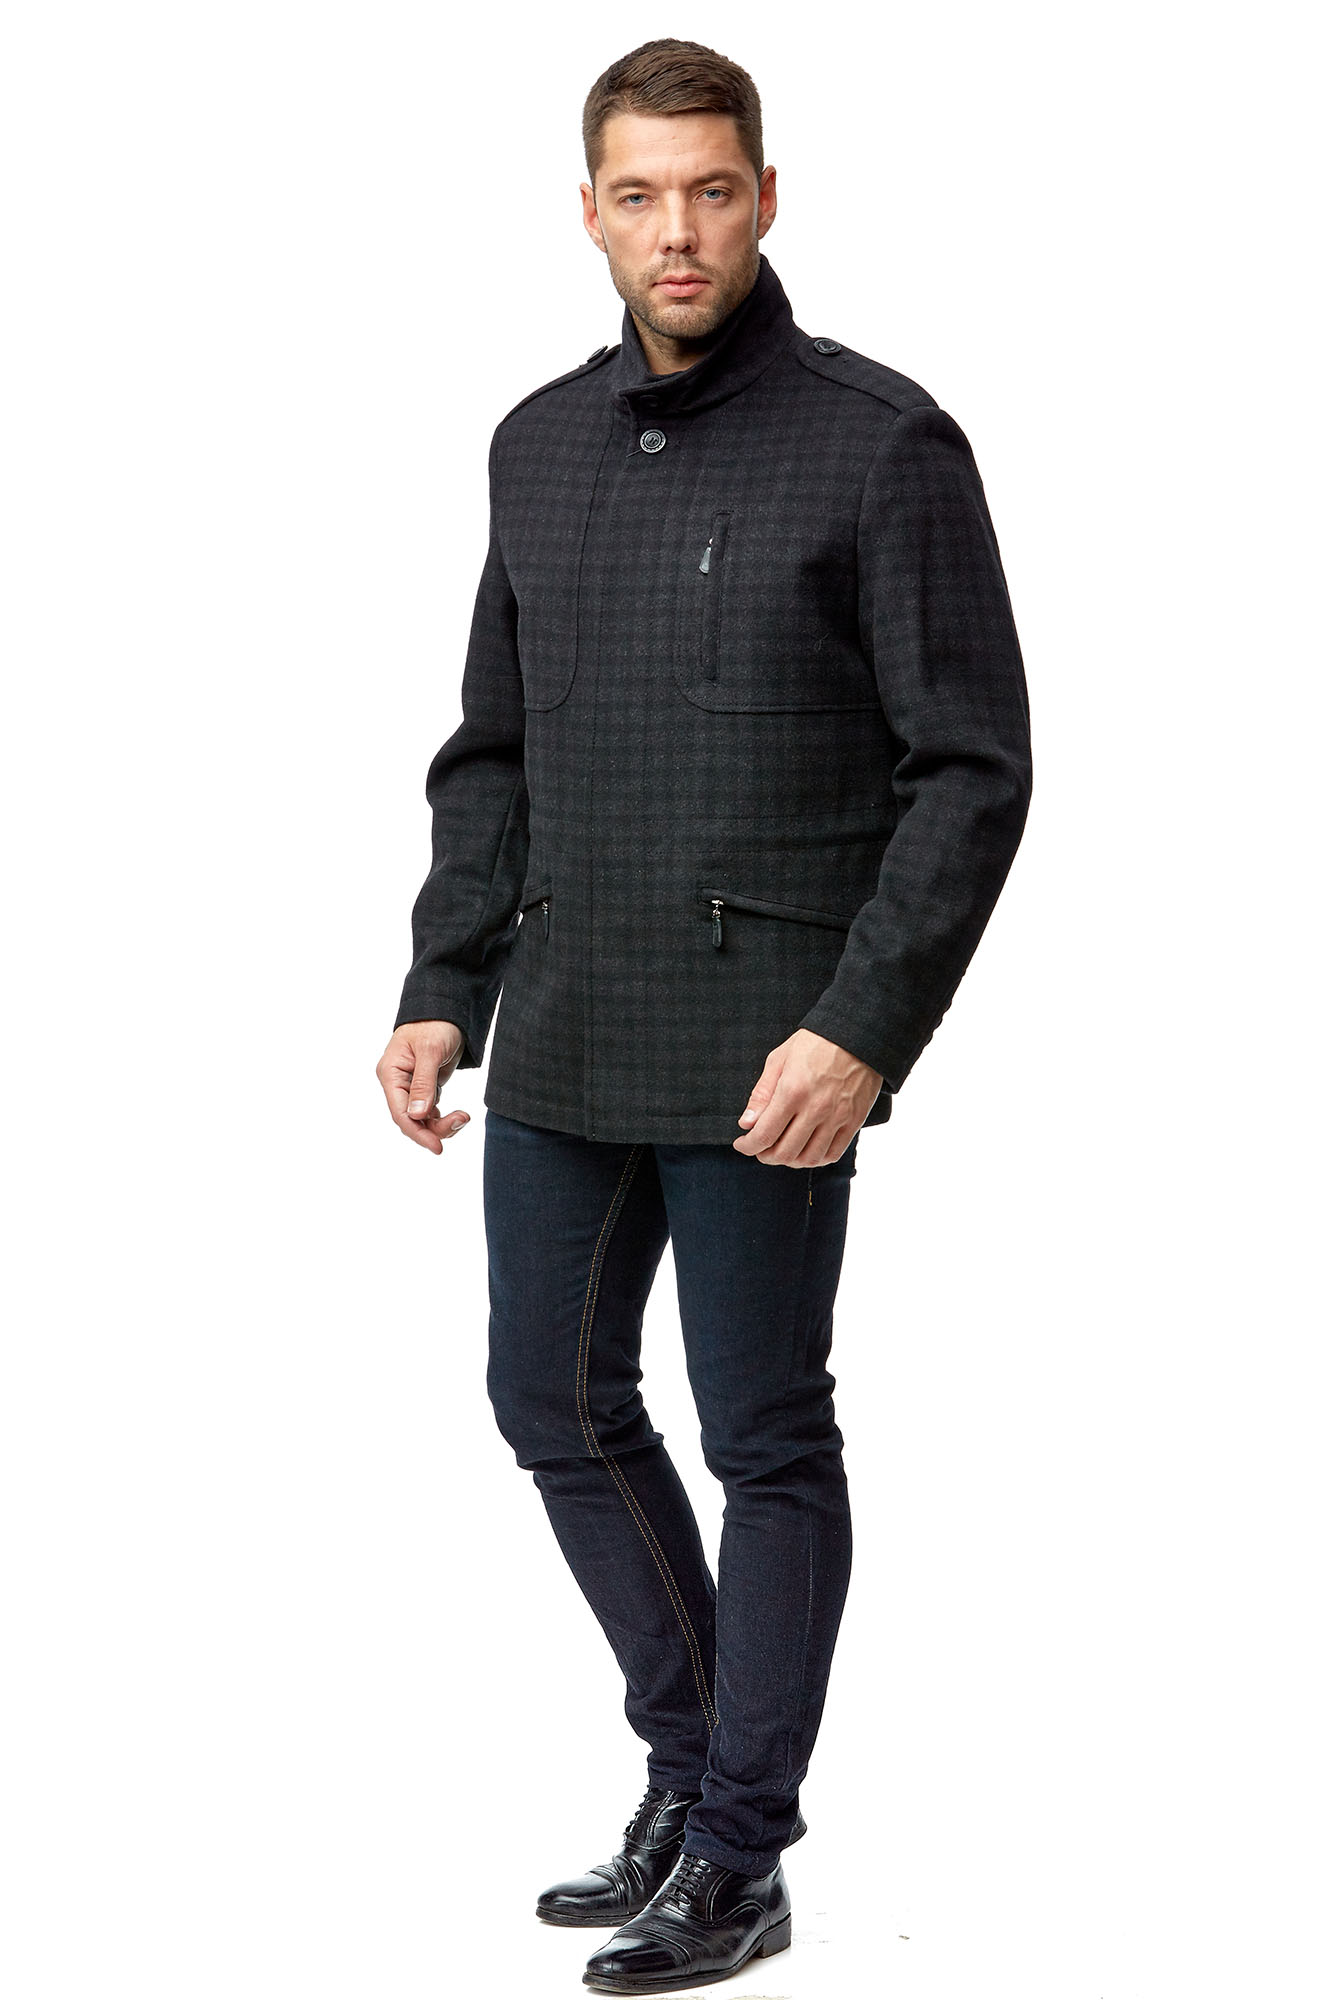 Мужское пальто из текстиля с воротником МОСМЕХА черного цвета